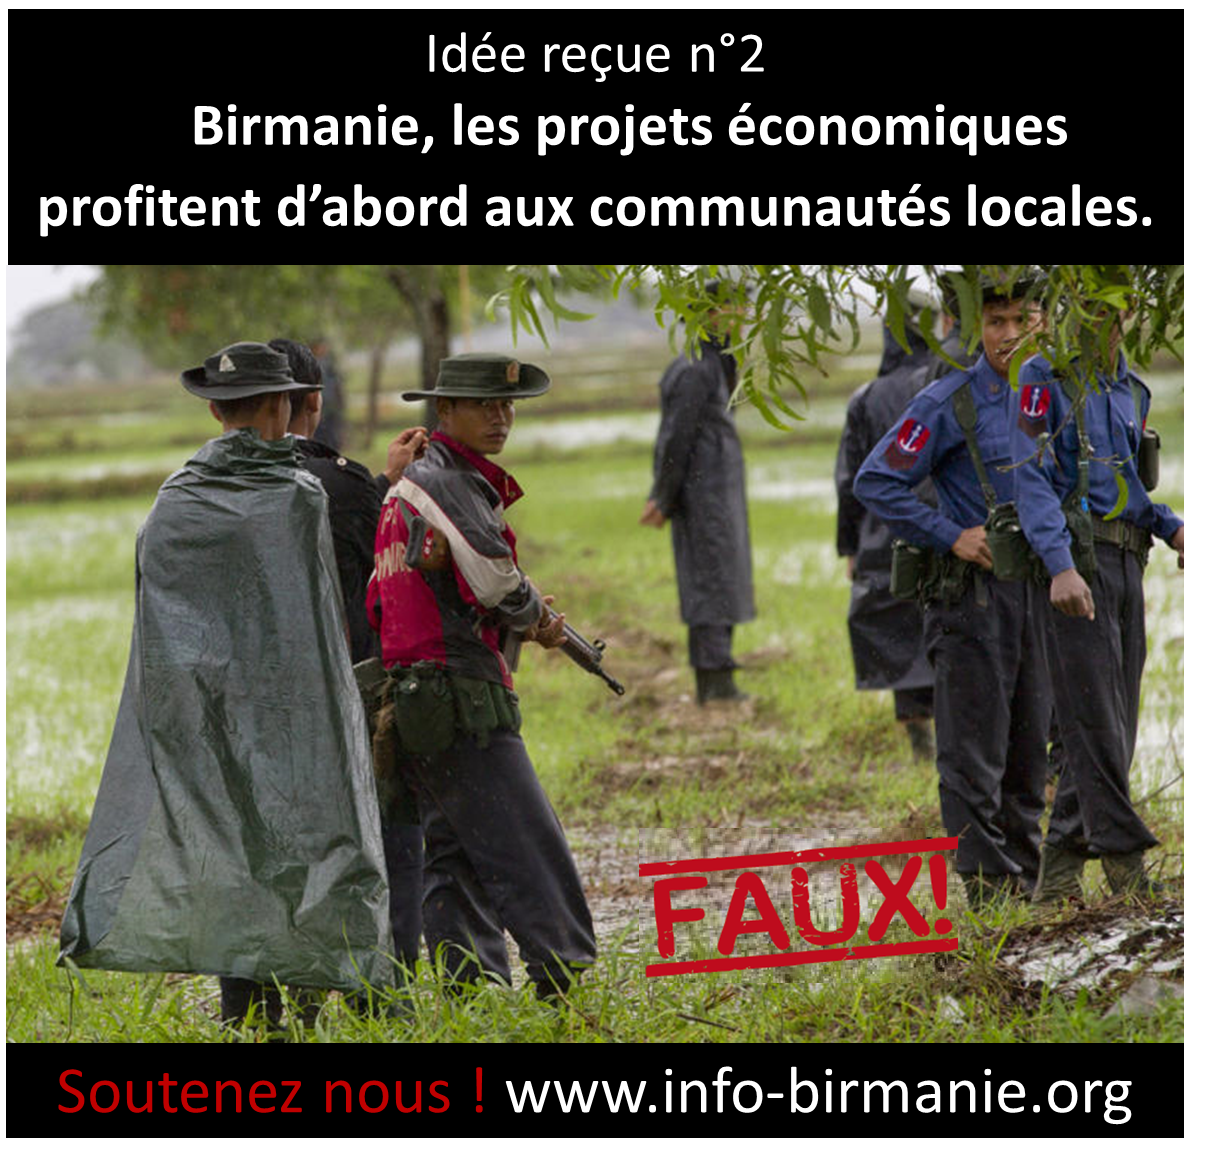 Idée reçue n°2 : En Birmanie, les projets économiques profitent d’abord aux communautés locales